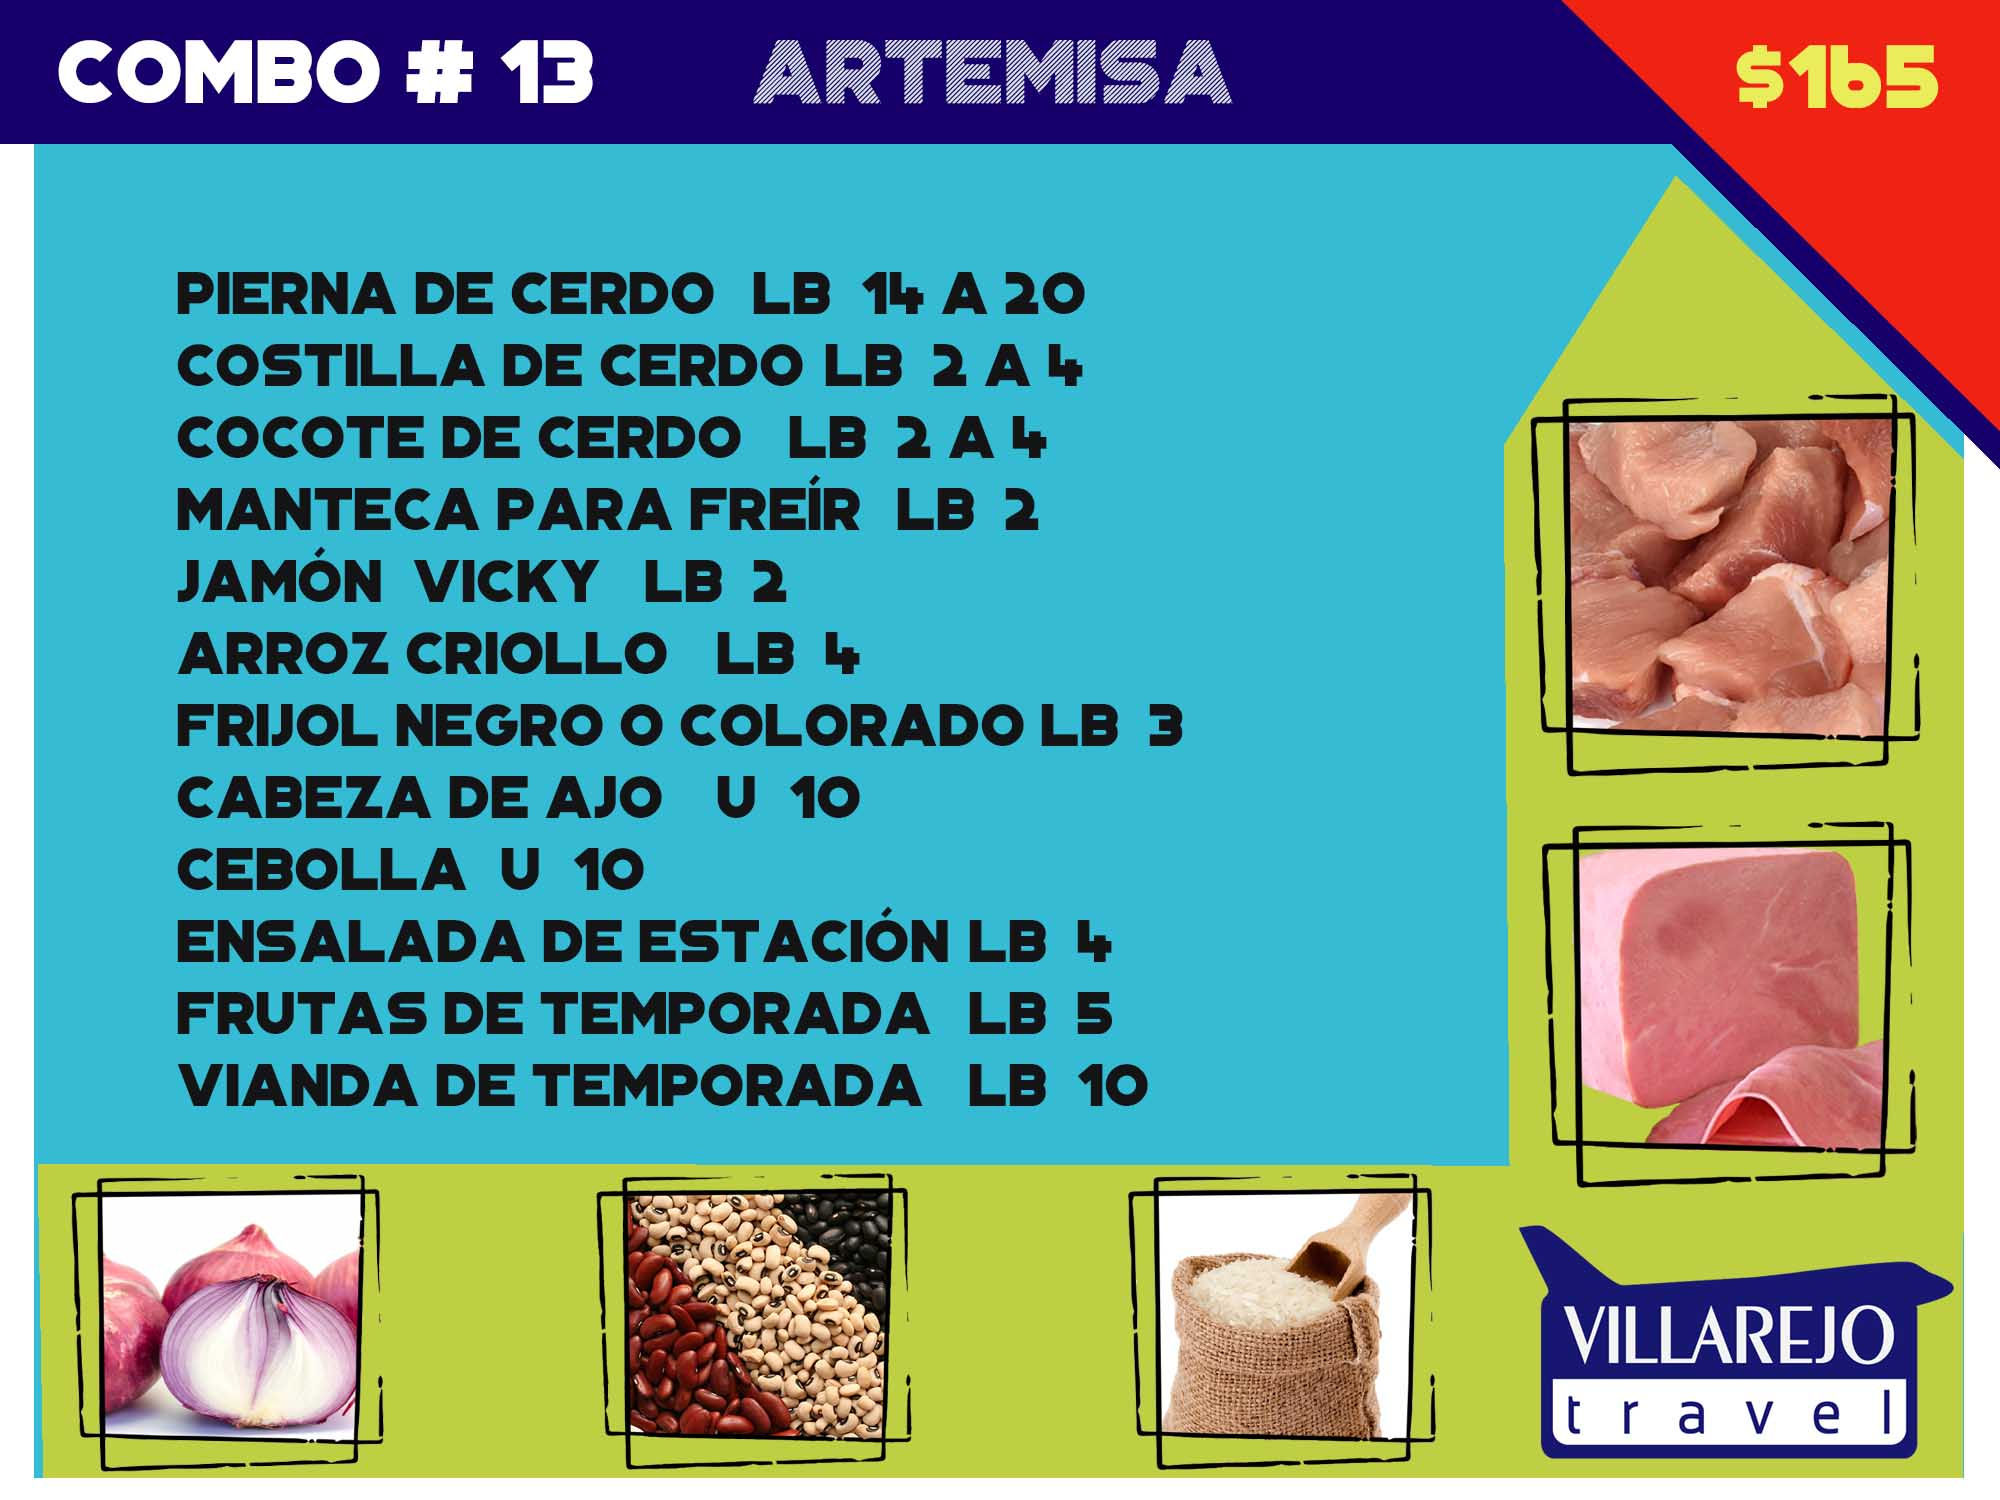 COMBO # 13 PROVINCIA DE ARTEMISA (Pierna)